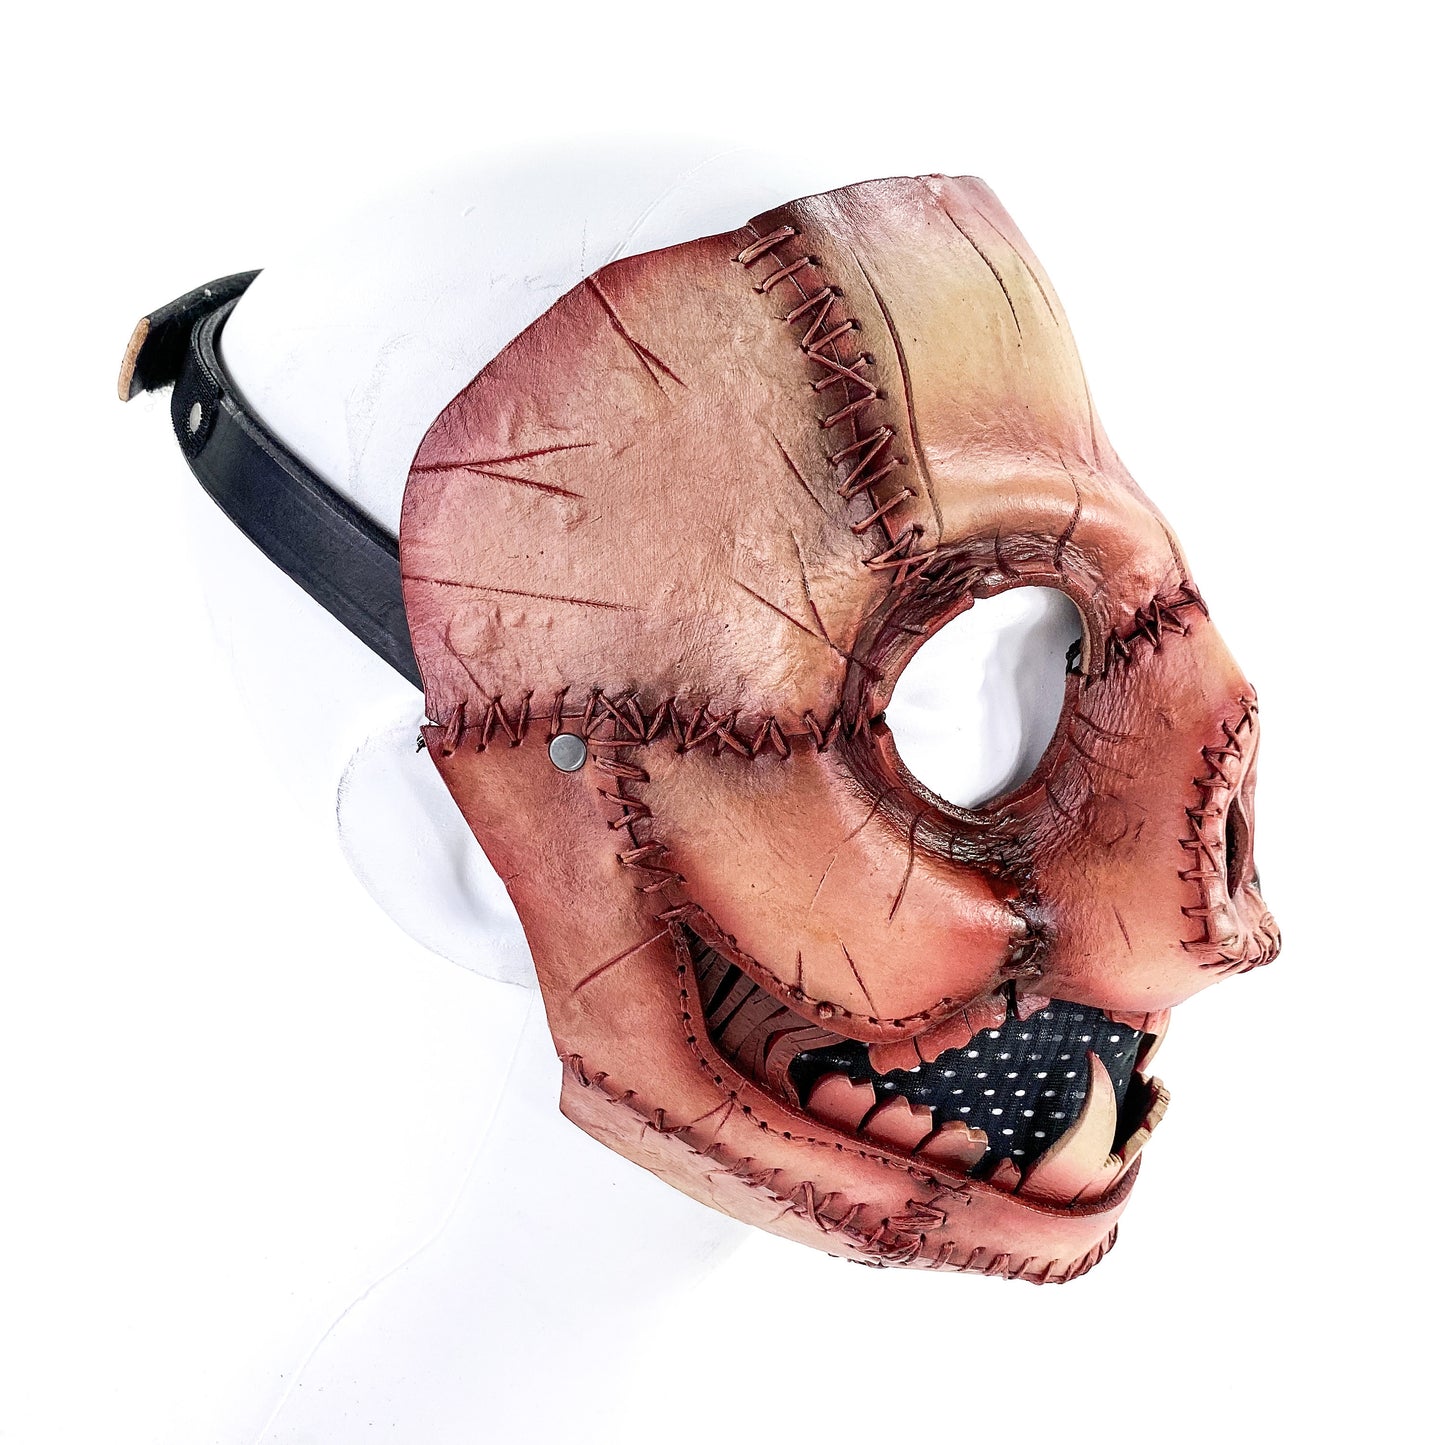 Evil Swine - Genuine Leather Mask - Freshly Butchered Horror Pig  - Handmade Full Face Cover for Halloween or Performance Costume